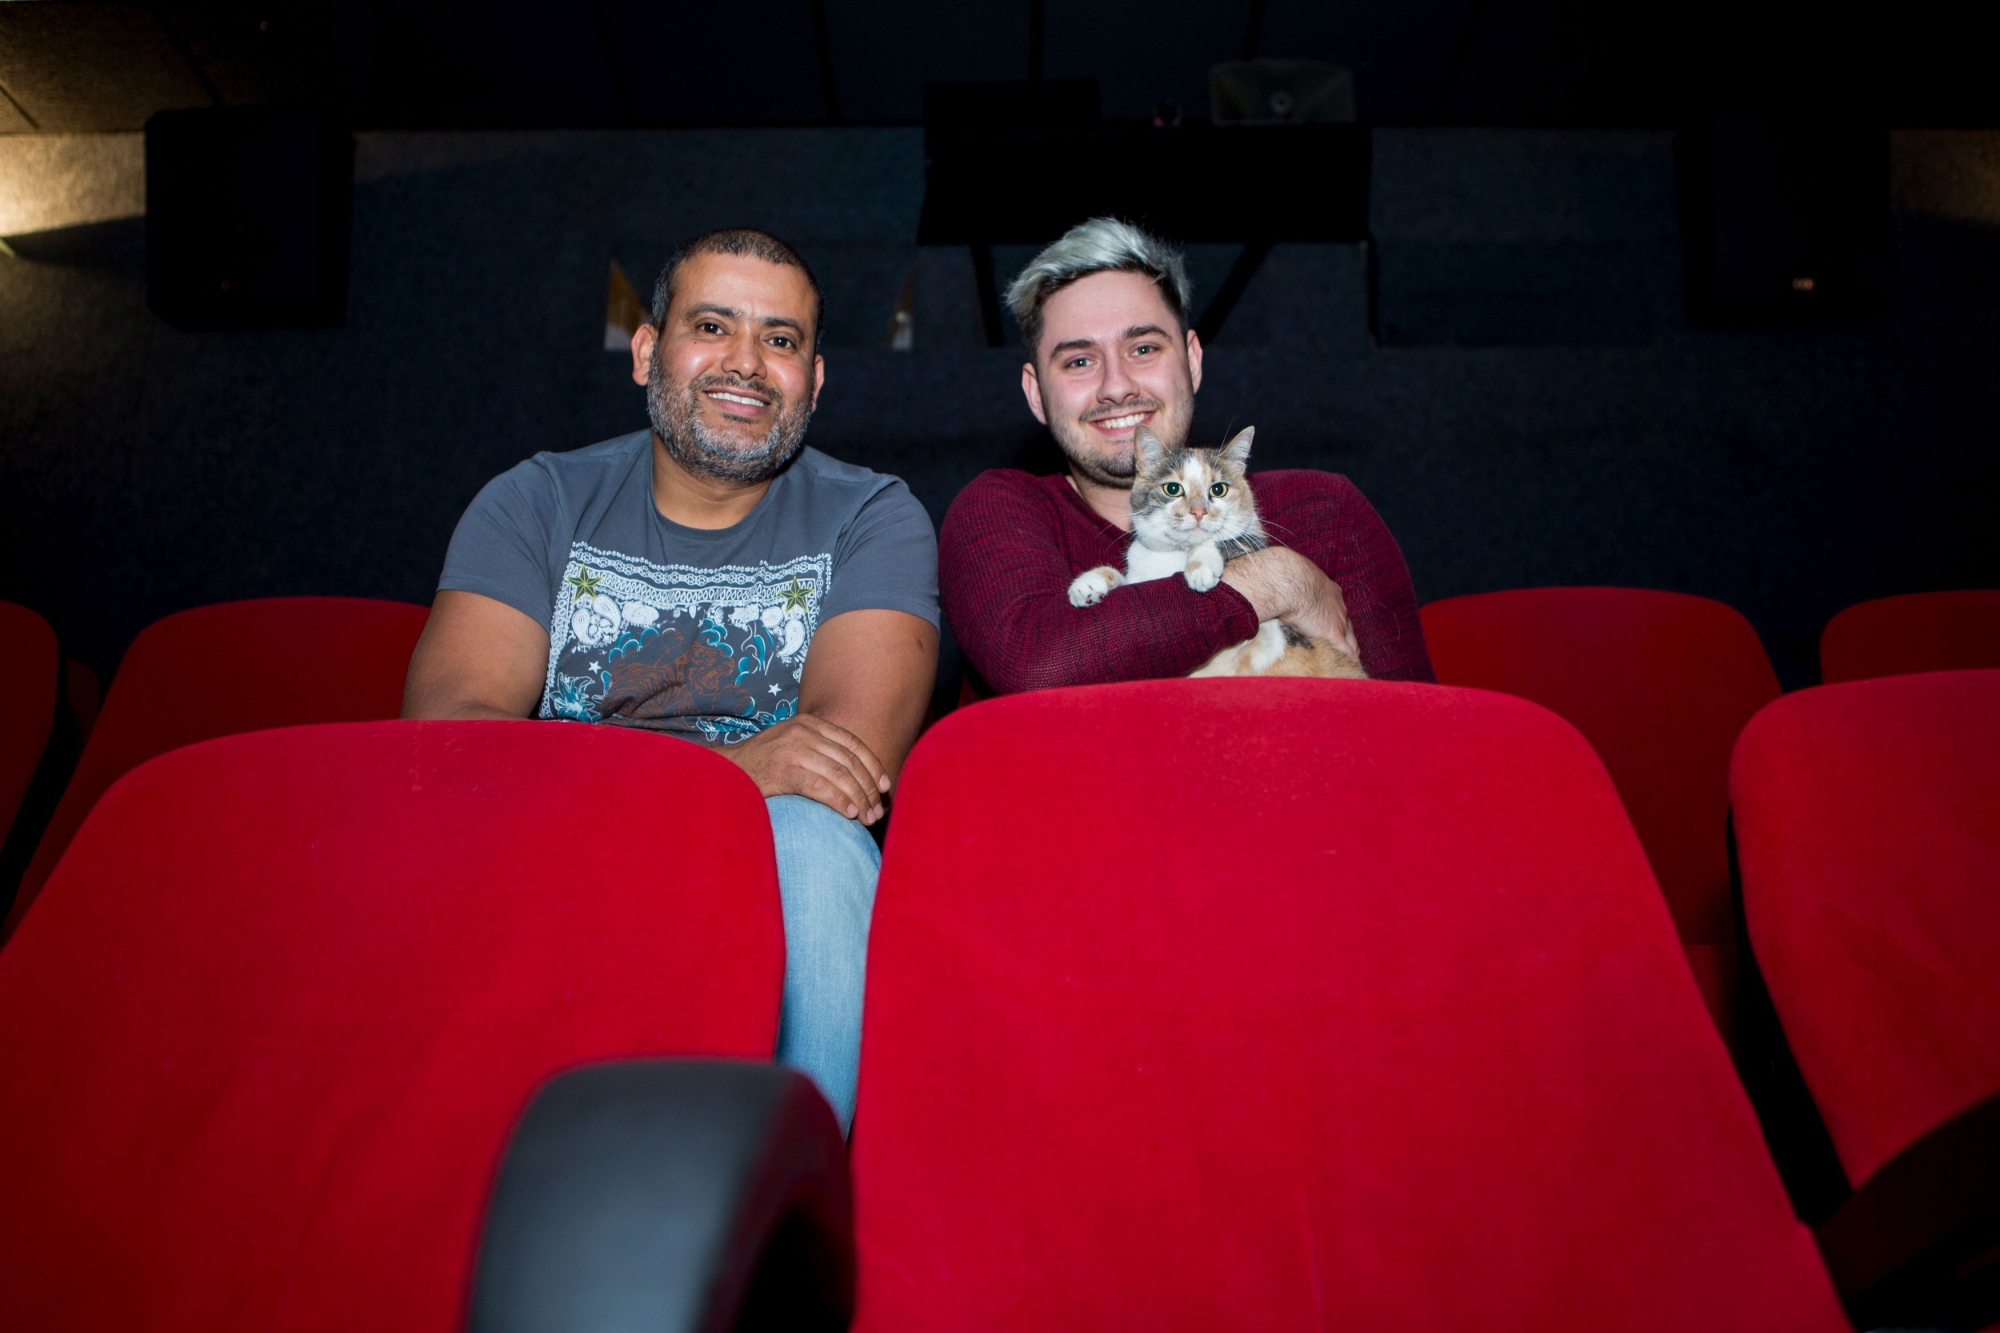 Adel Benfarhat, gérant du cinéma Le Capitole à Nyon et Niels Renard, responsable marketing, avec le chat Gribouille.